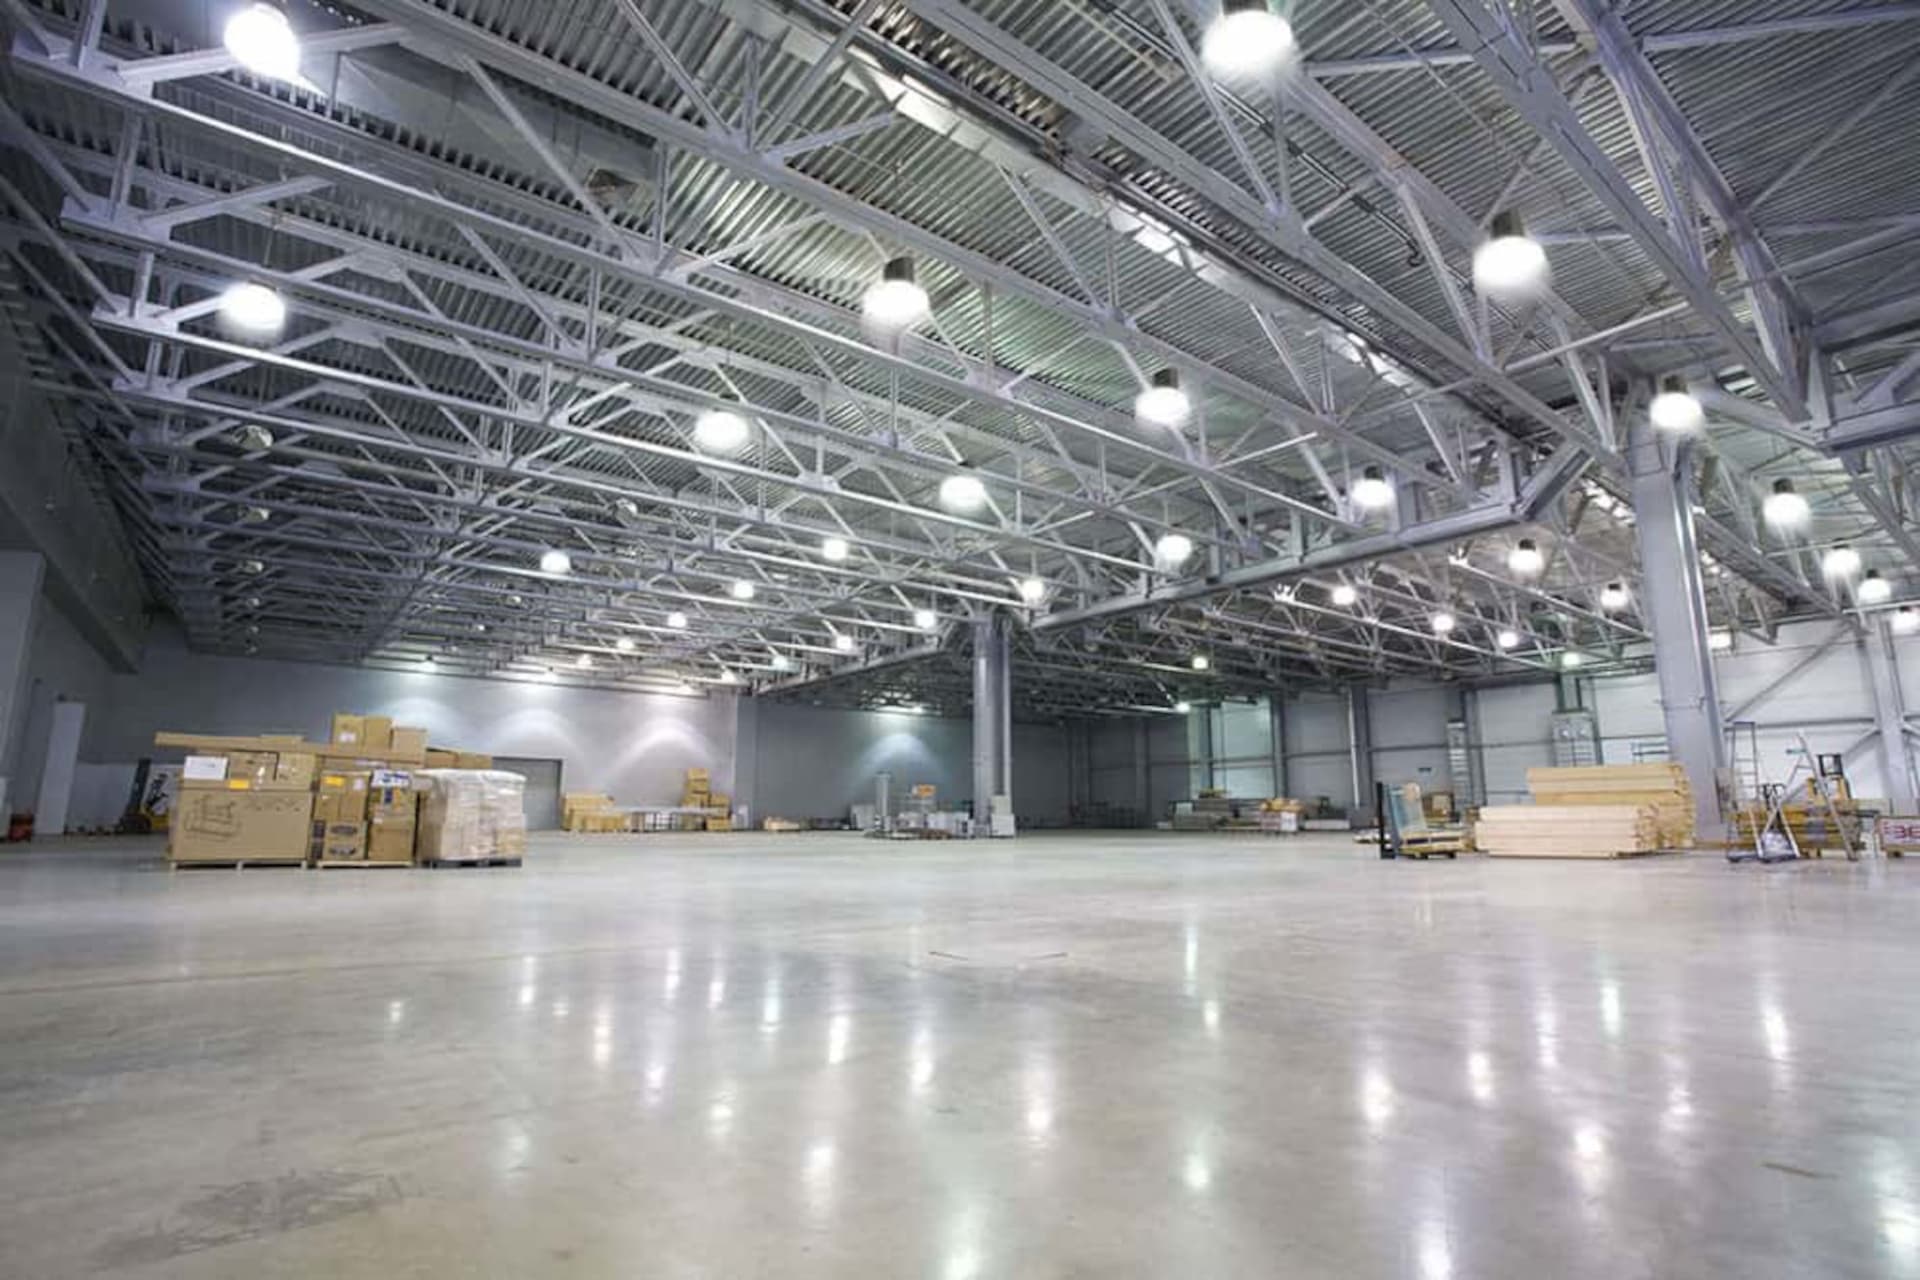 Warehouse ceiling light